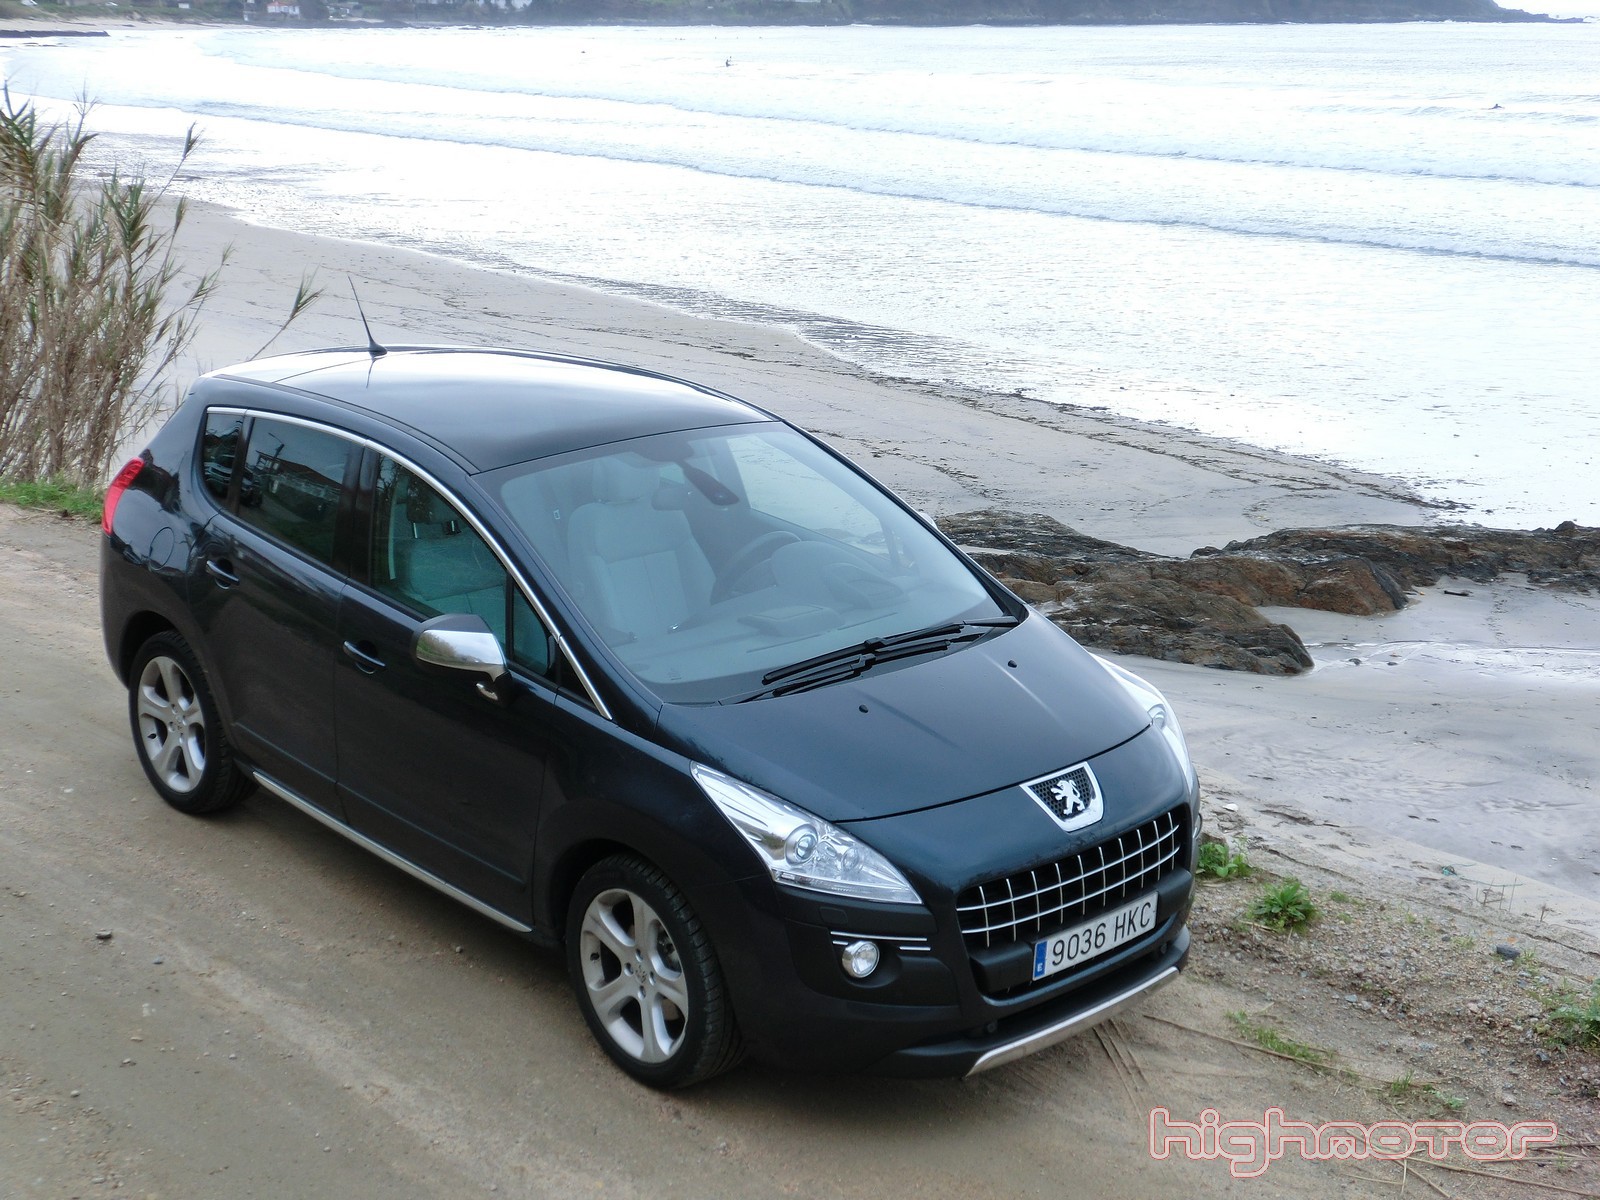 Peugeot 3008 2.0 HDi 163 CV Aut., prueba (Diseño, interior, equipamiento y precio)